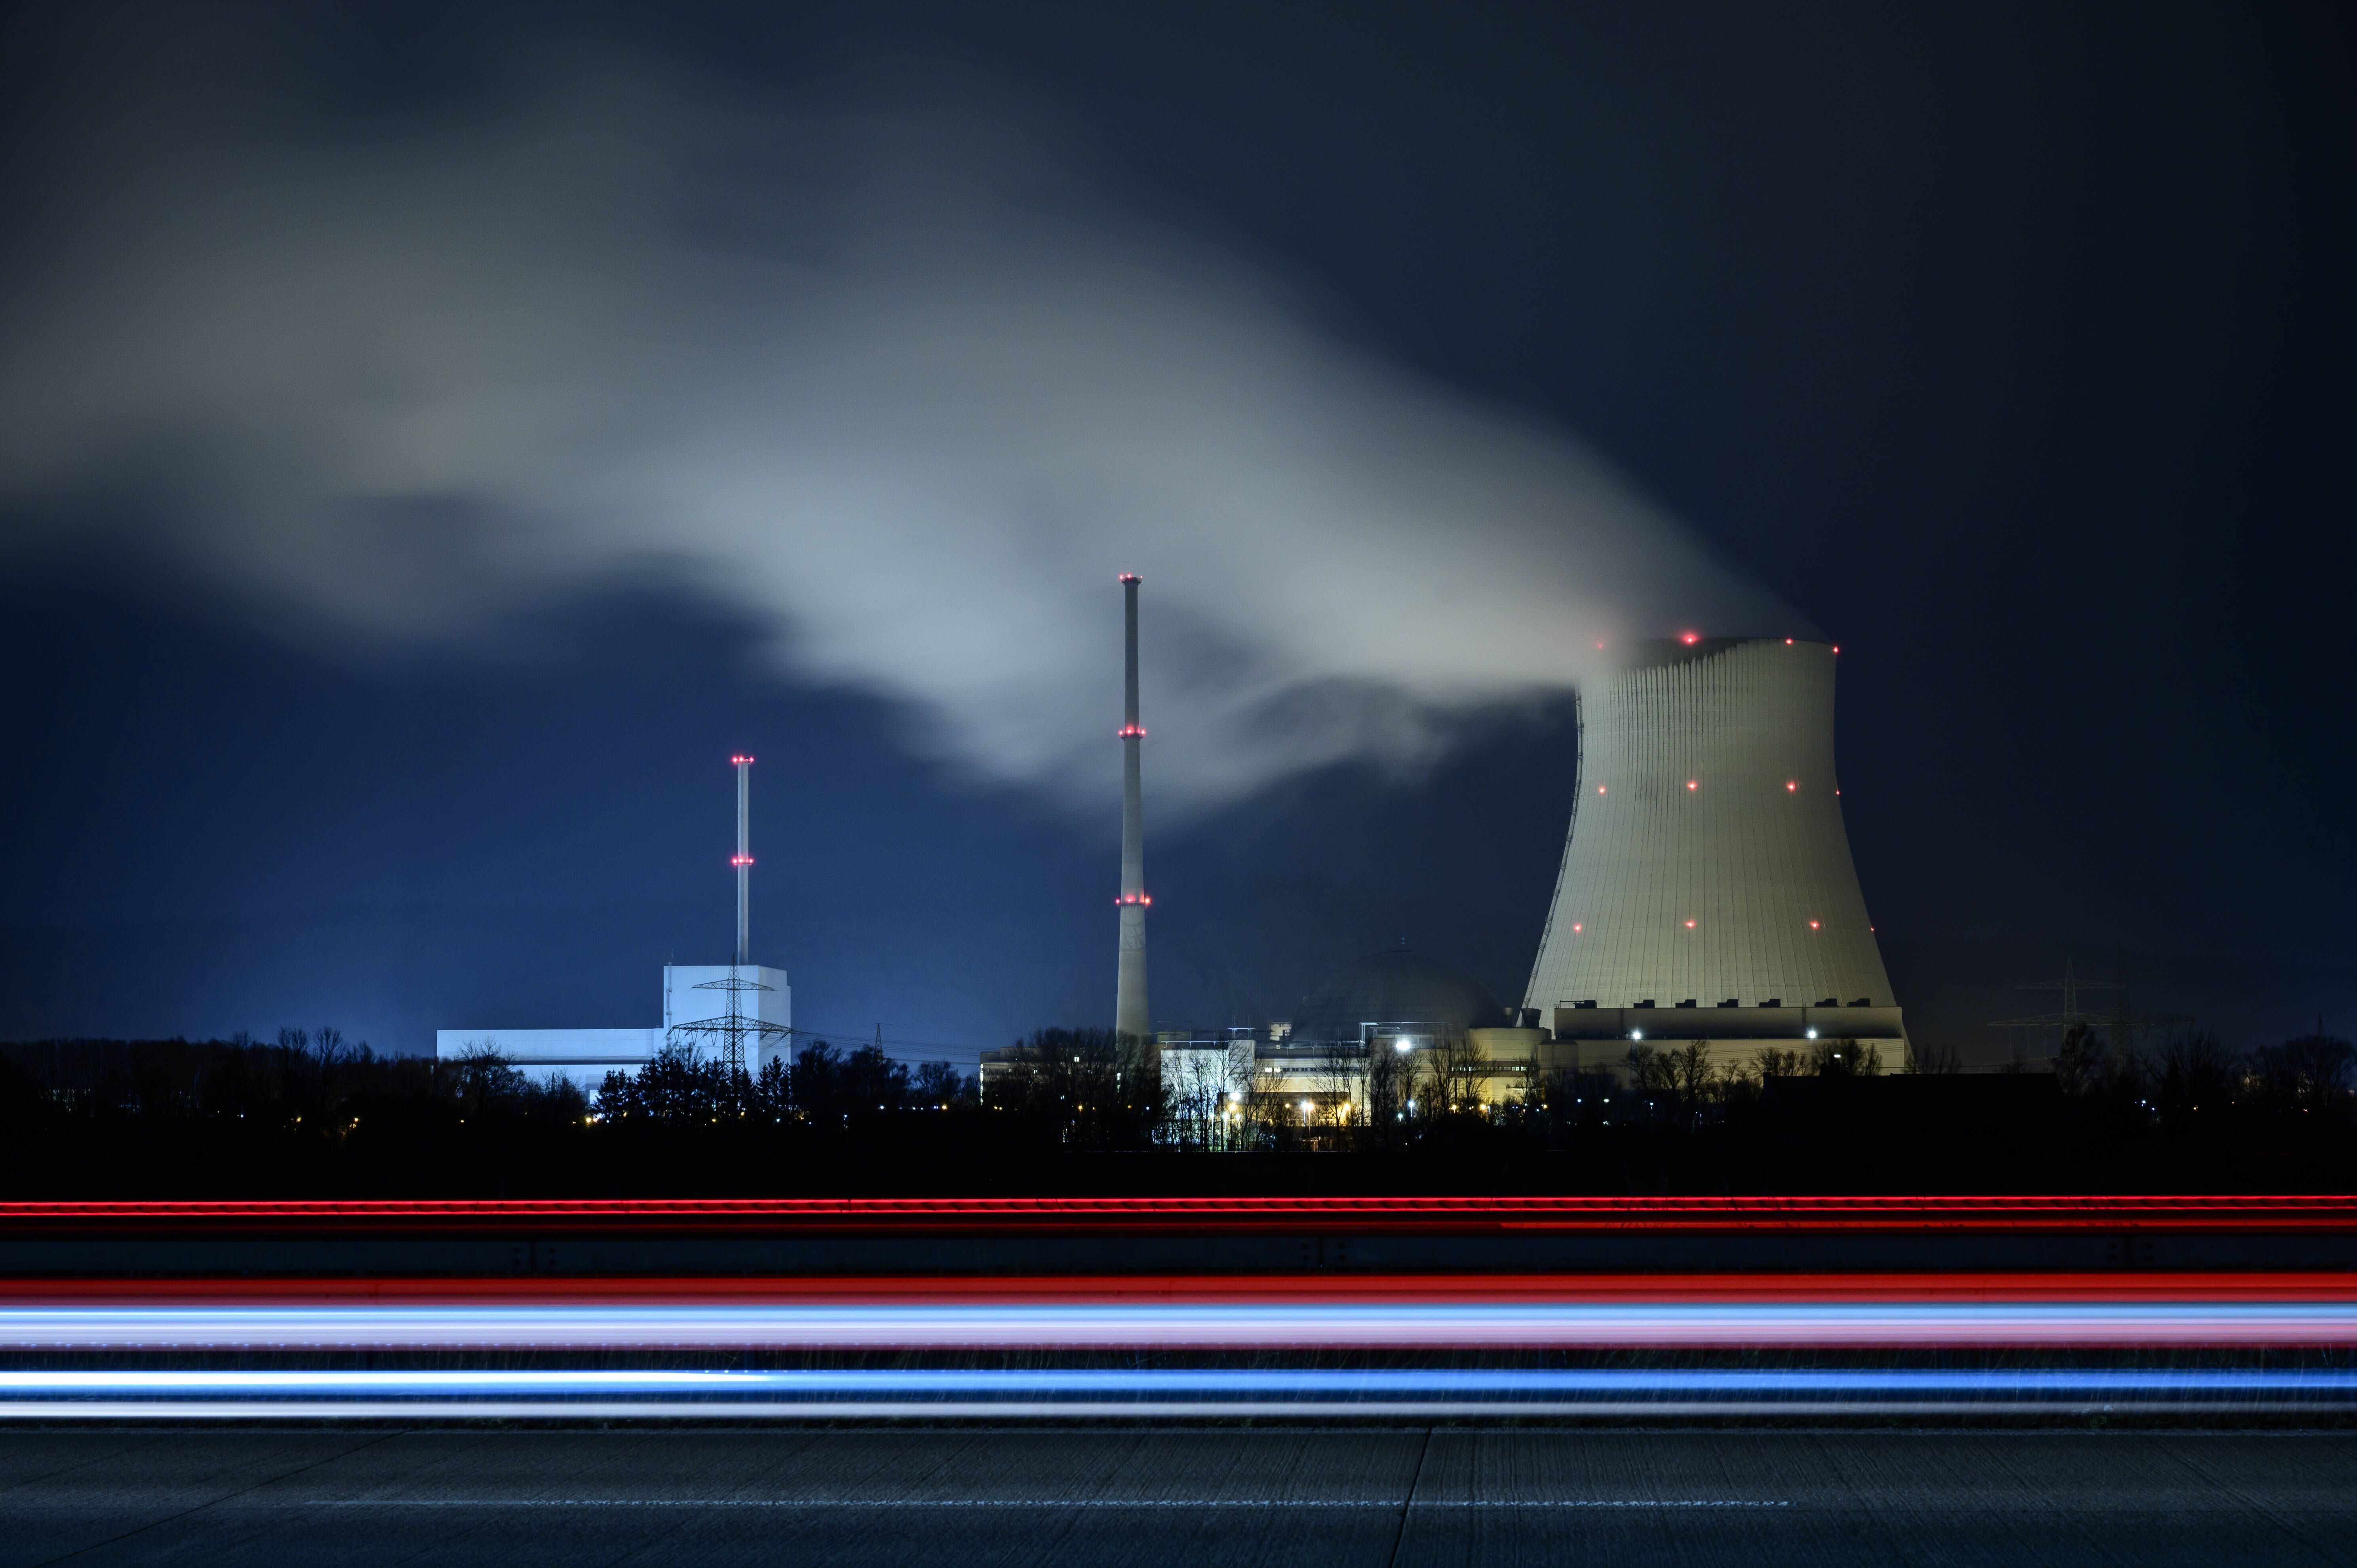 Kernenergie und Umweltschutz - Atomkraft als Klimaretter?